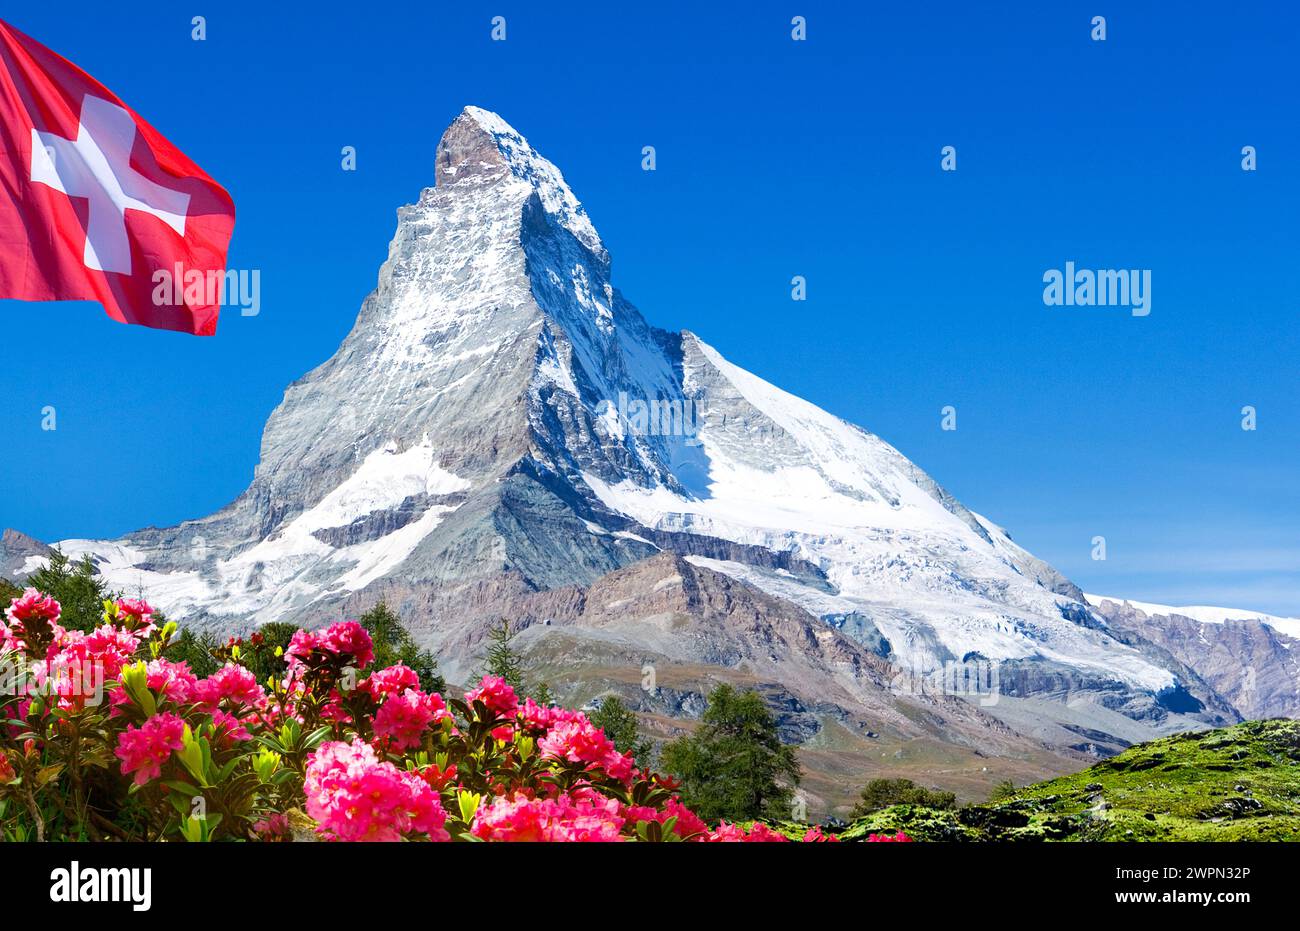 Pic de montagne, Cervin avec drapeau suisse et roses alpines [M] Banque D'Images